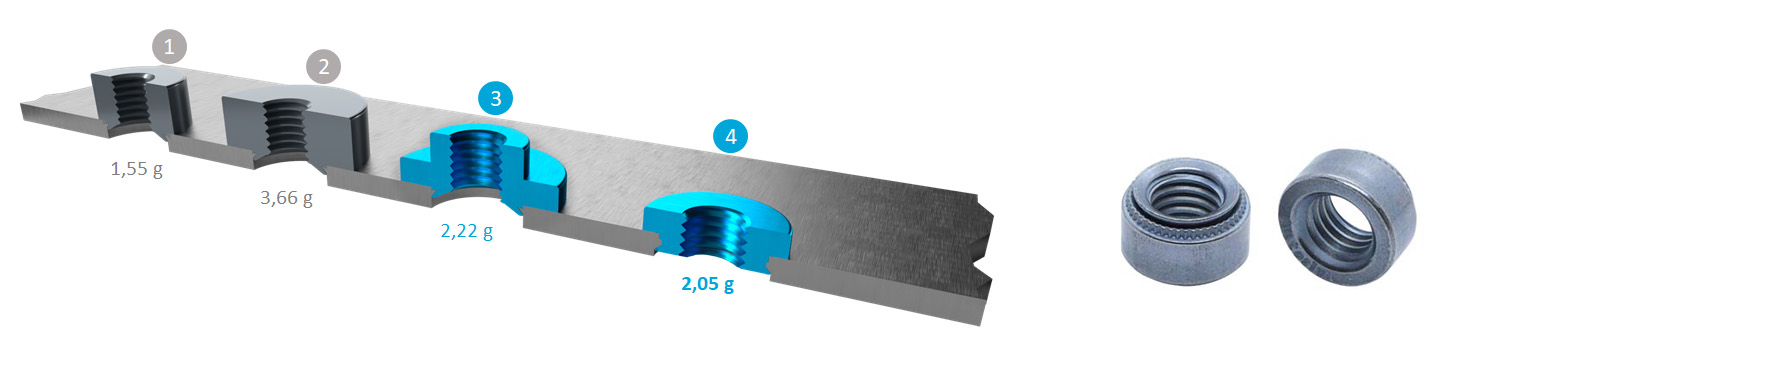 autoriv fasteners automation asn einpressmutter performance leichtbau lightweight blech stahl magnesium aluminium kunststoff kohlefaser